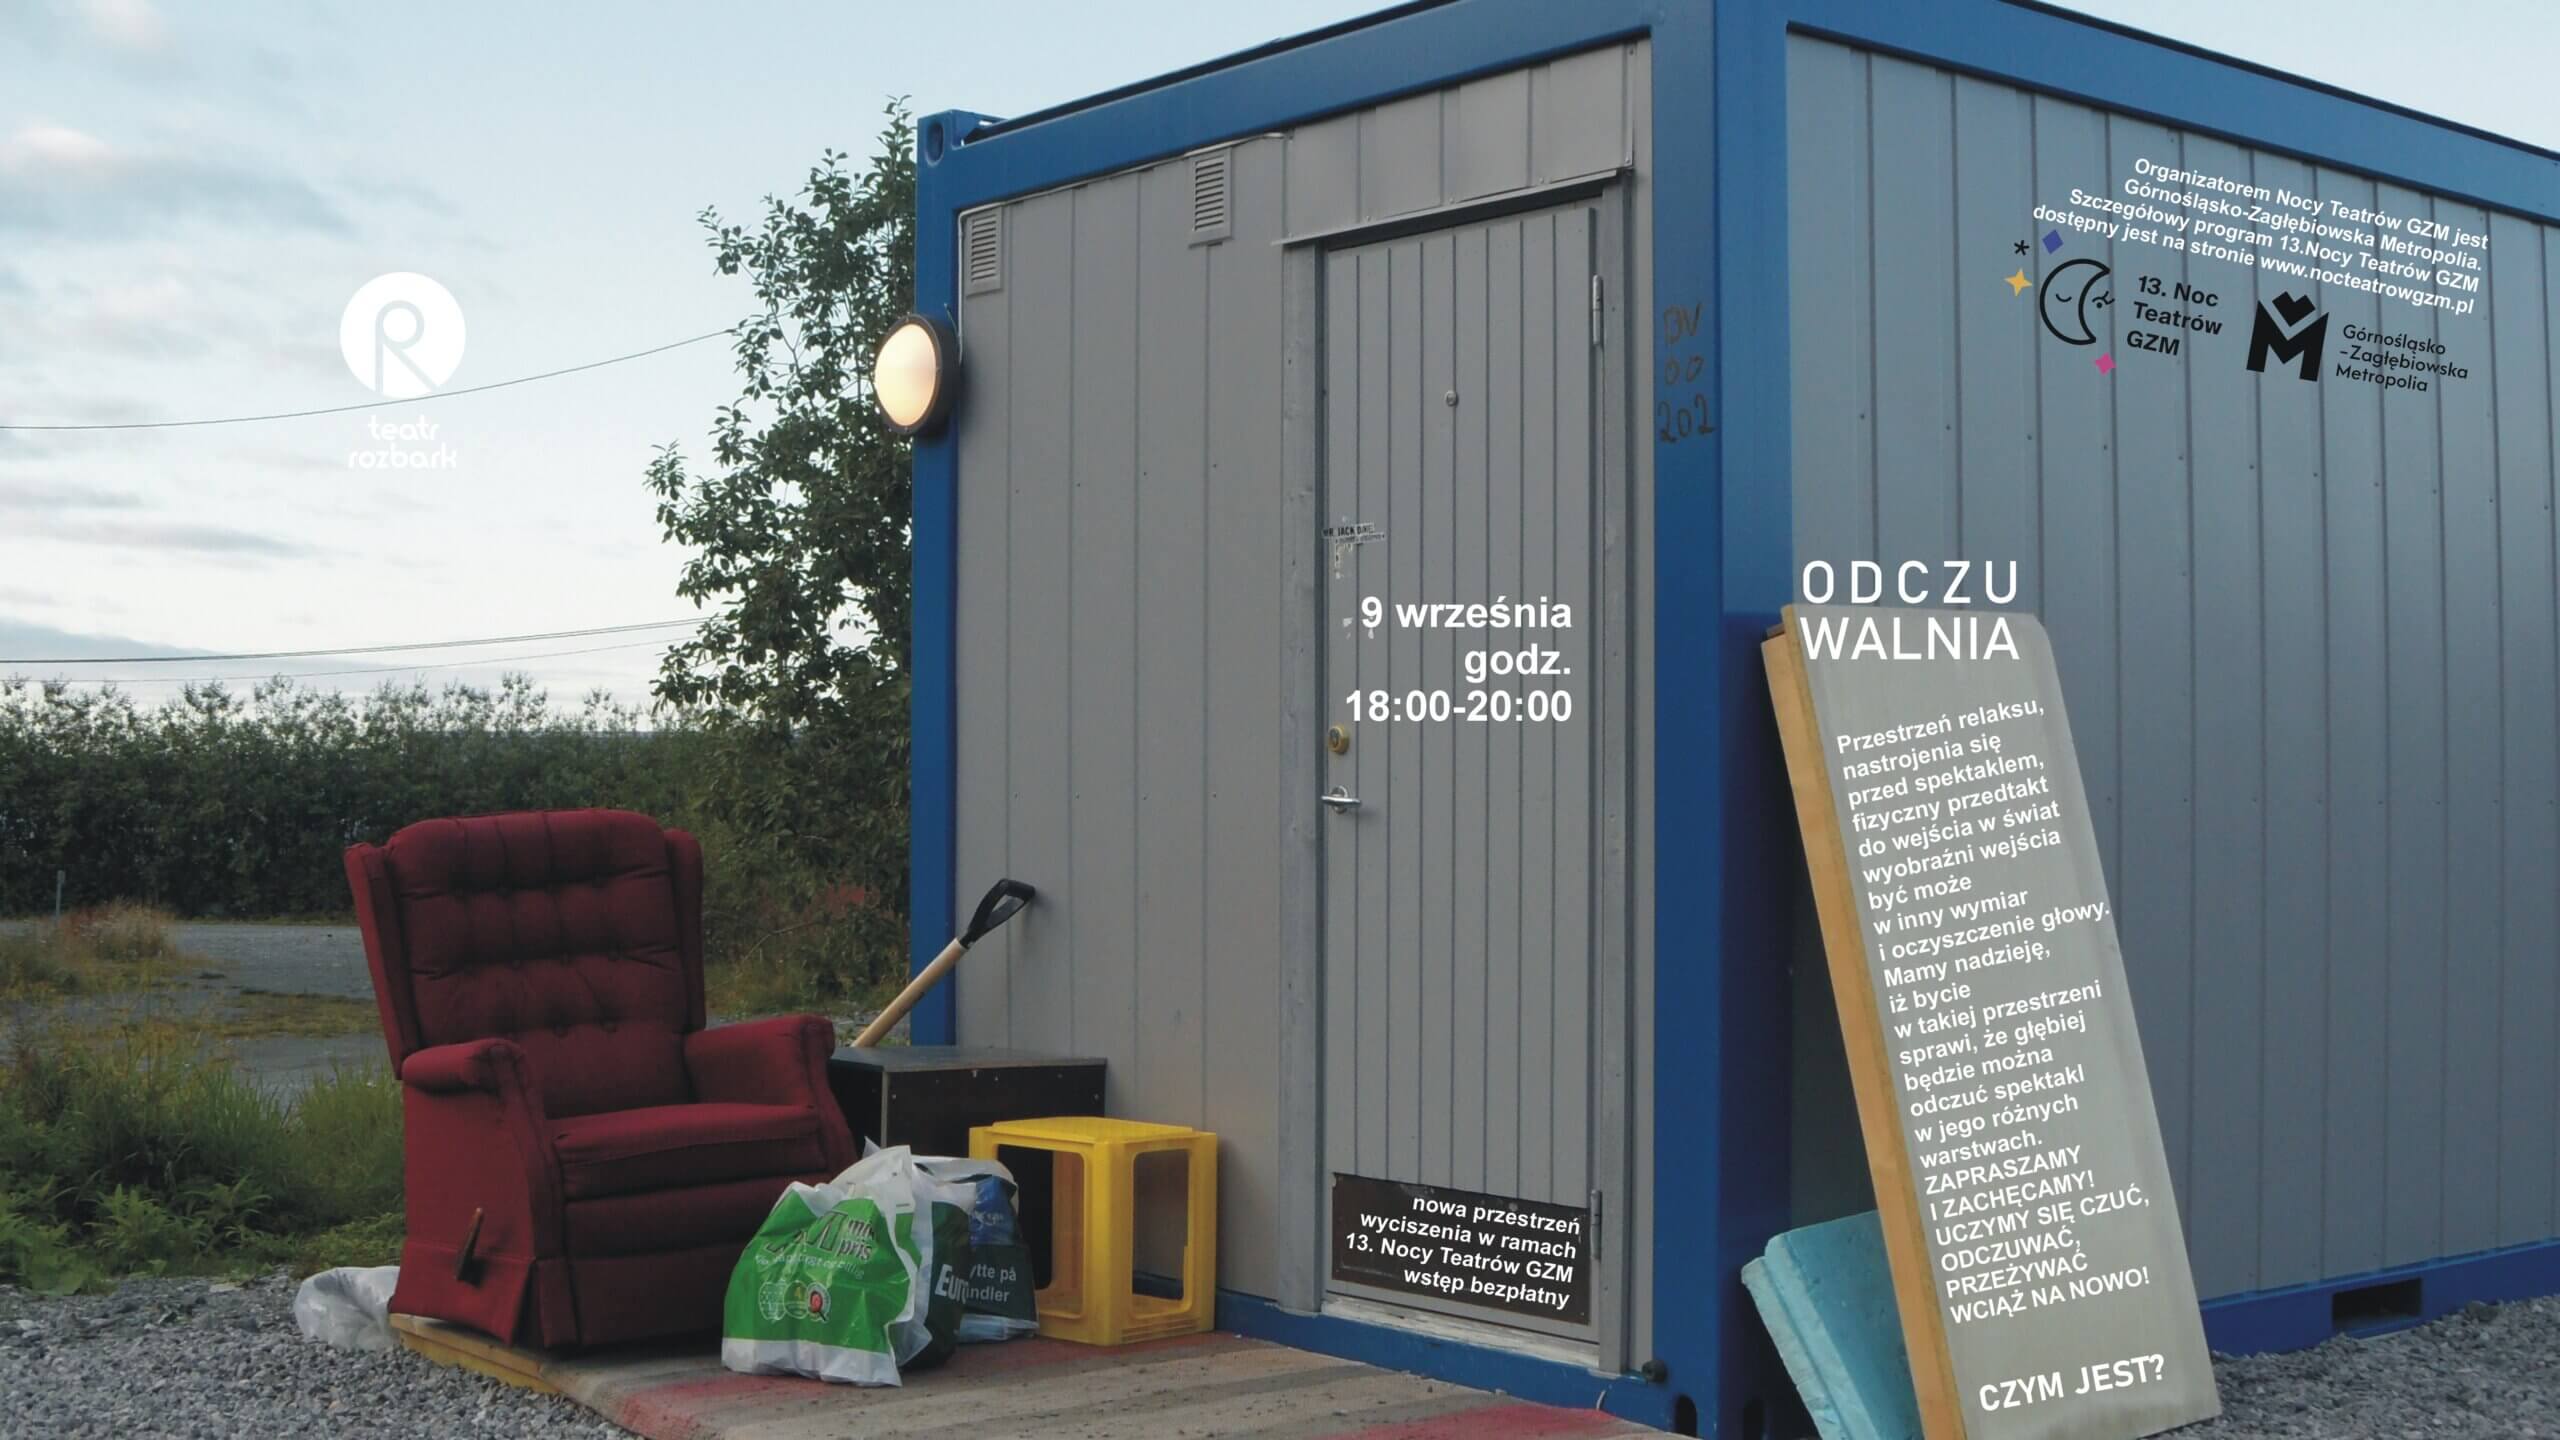 Zdjęcie, na którym znajduje się kontener mieszkalny w kolorze niebiesko-szarym. Przed nim stoi czerwony fotel, reklamówki oraz żóta plastikowa skrzynka. Znajduje sie również napis Odzczuwalnia, 9 września godz. 18.00-20.00